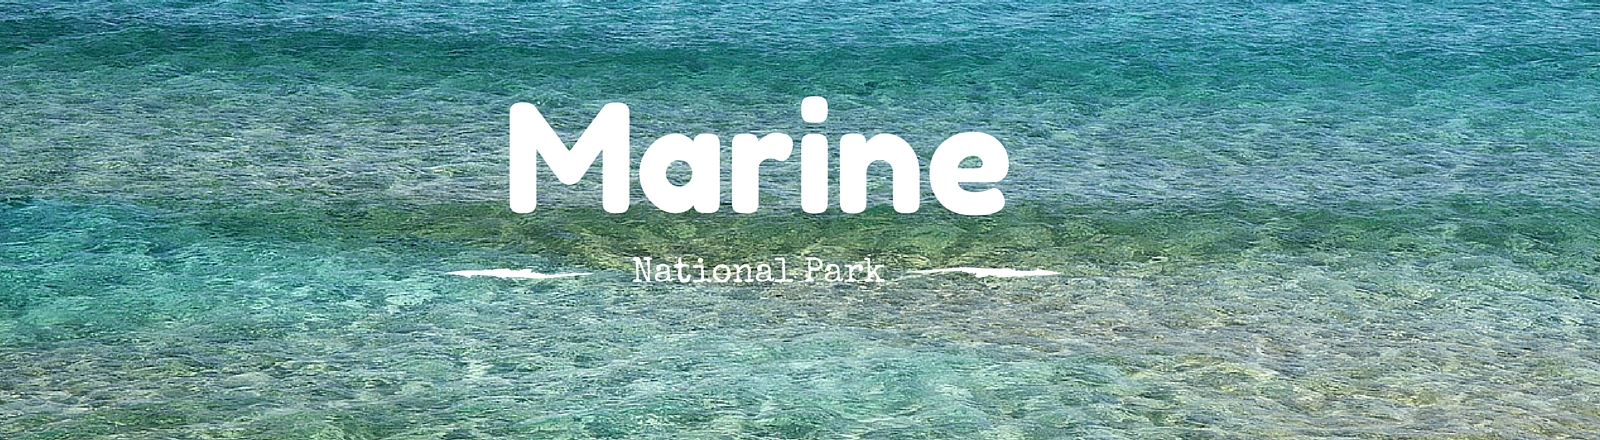 Karaburun-Sazan Marine National Park, National Parks Guy